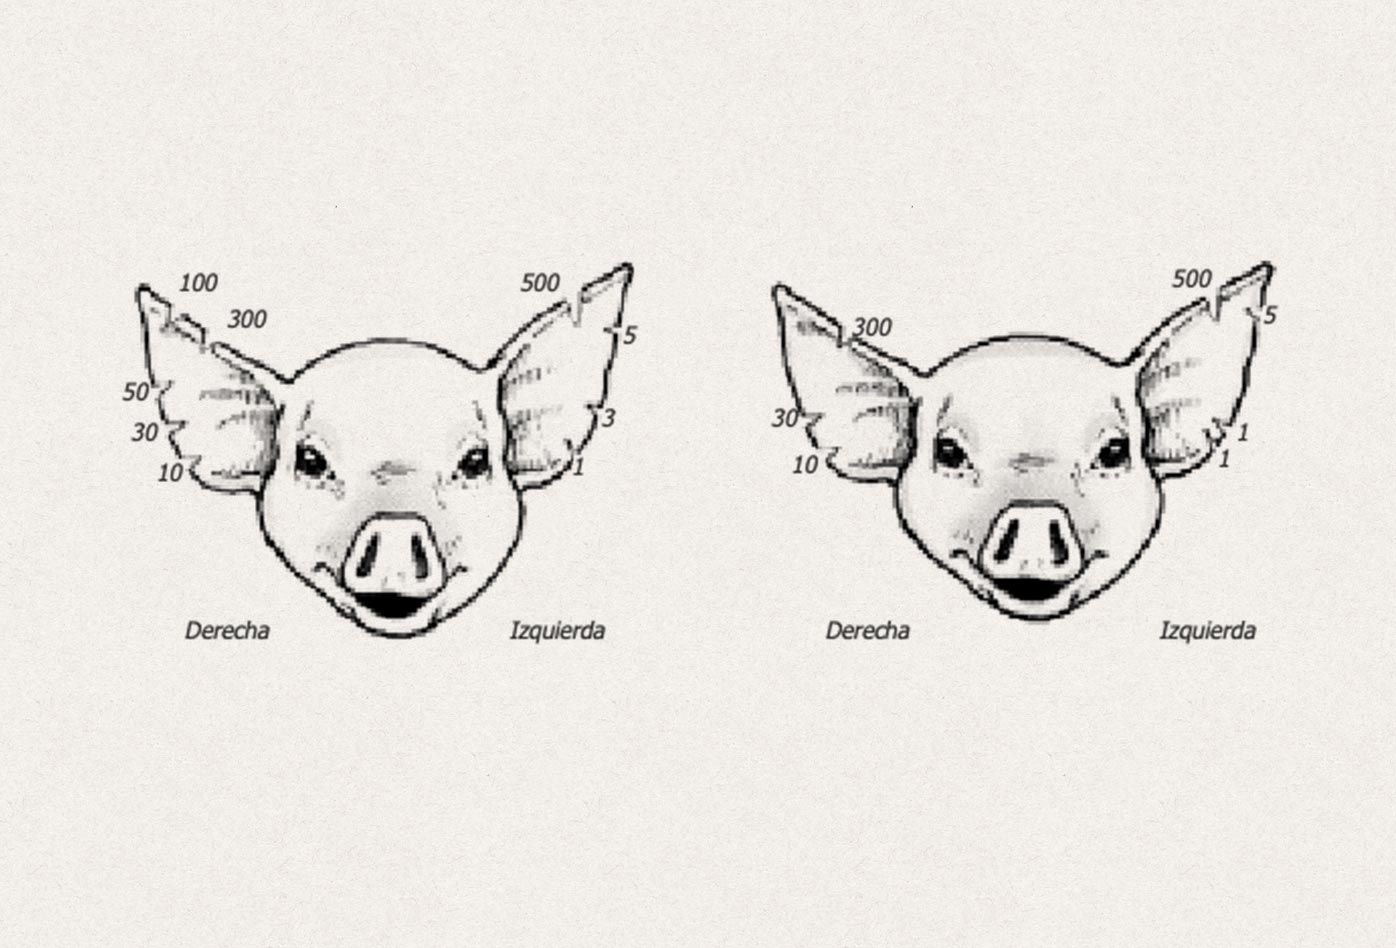 Ubicación de muescas para identificar cerdos